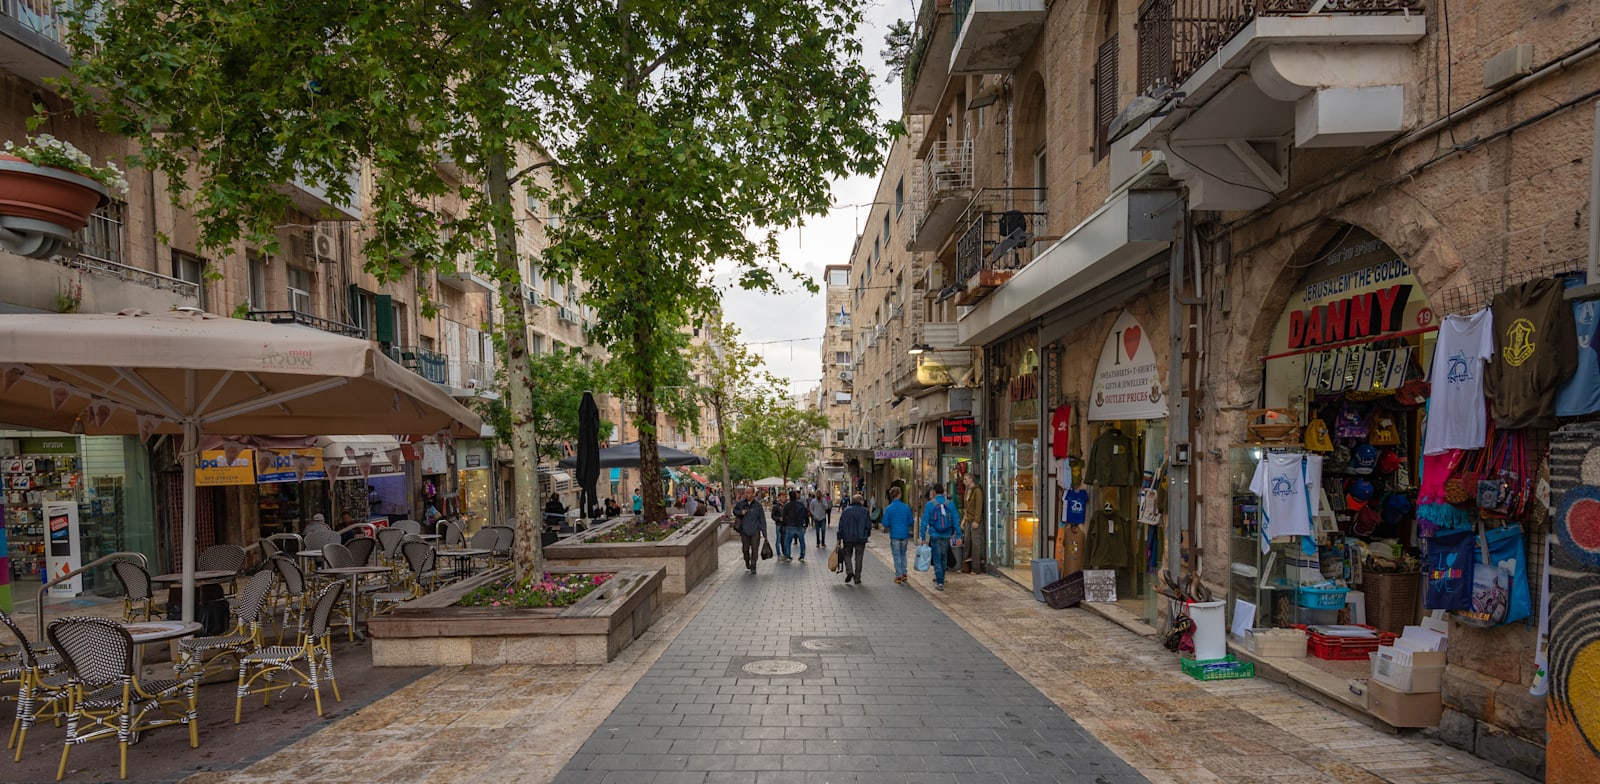 רחוב בן יהודה בירושלים. עד שנת 2025 יתווספו 20־30 אלף מ”ר של שטחי מסחר למרכז העיר / צילום: Shutterstock